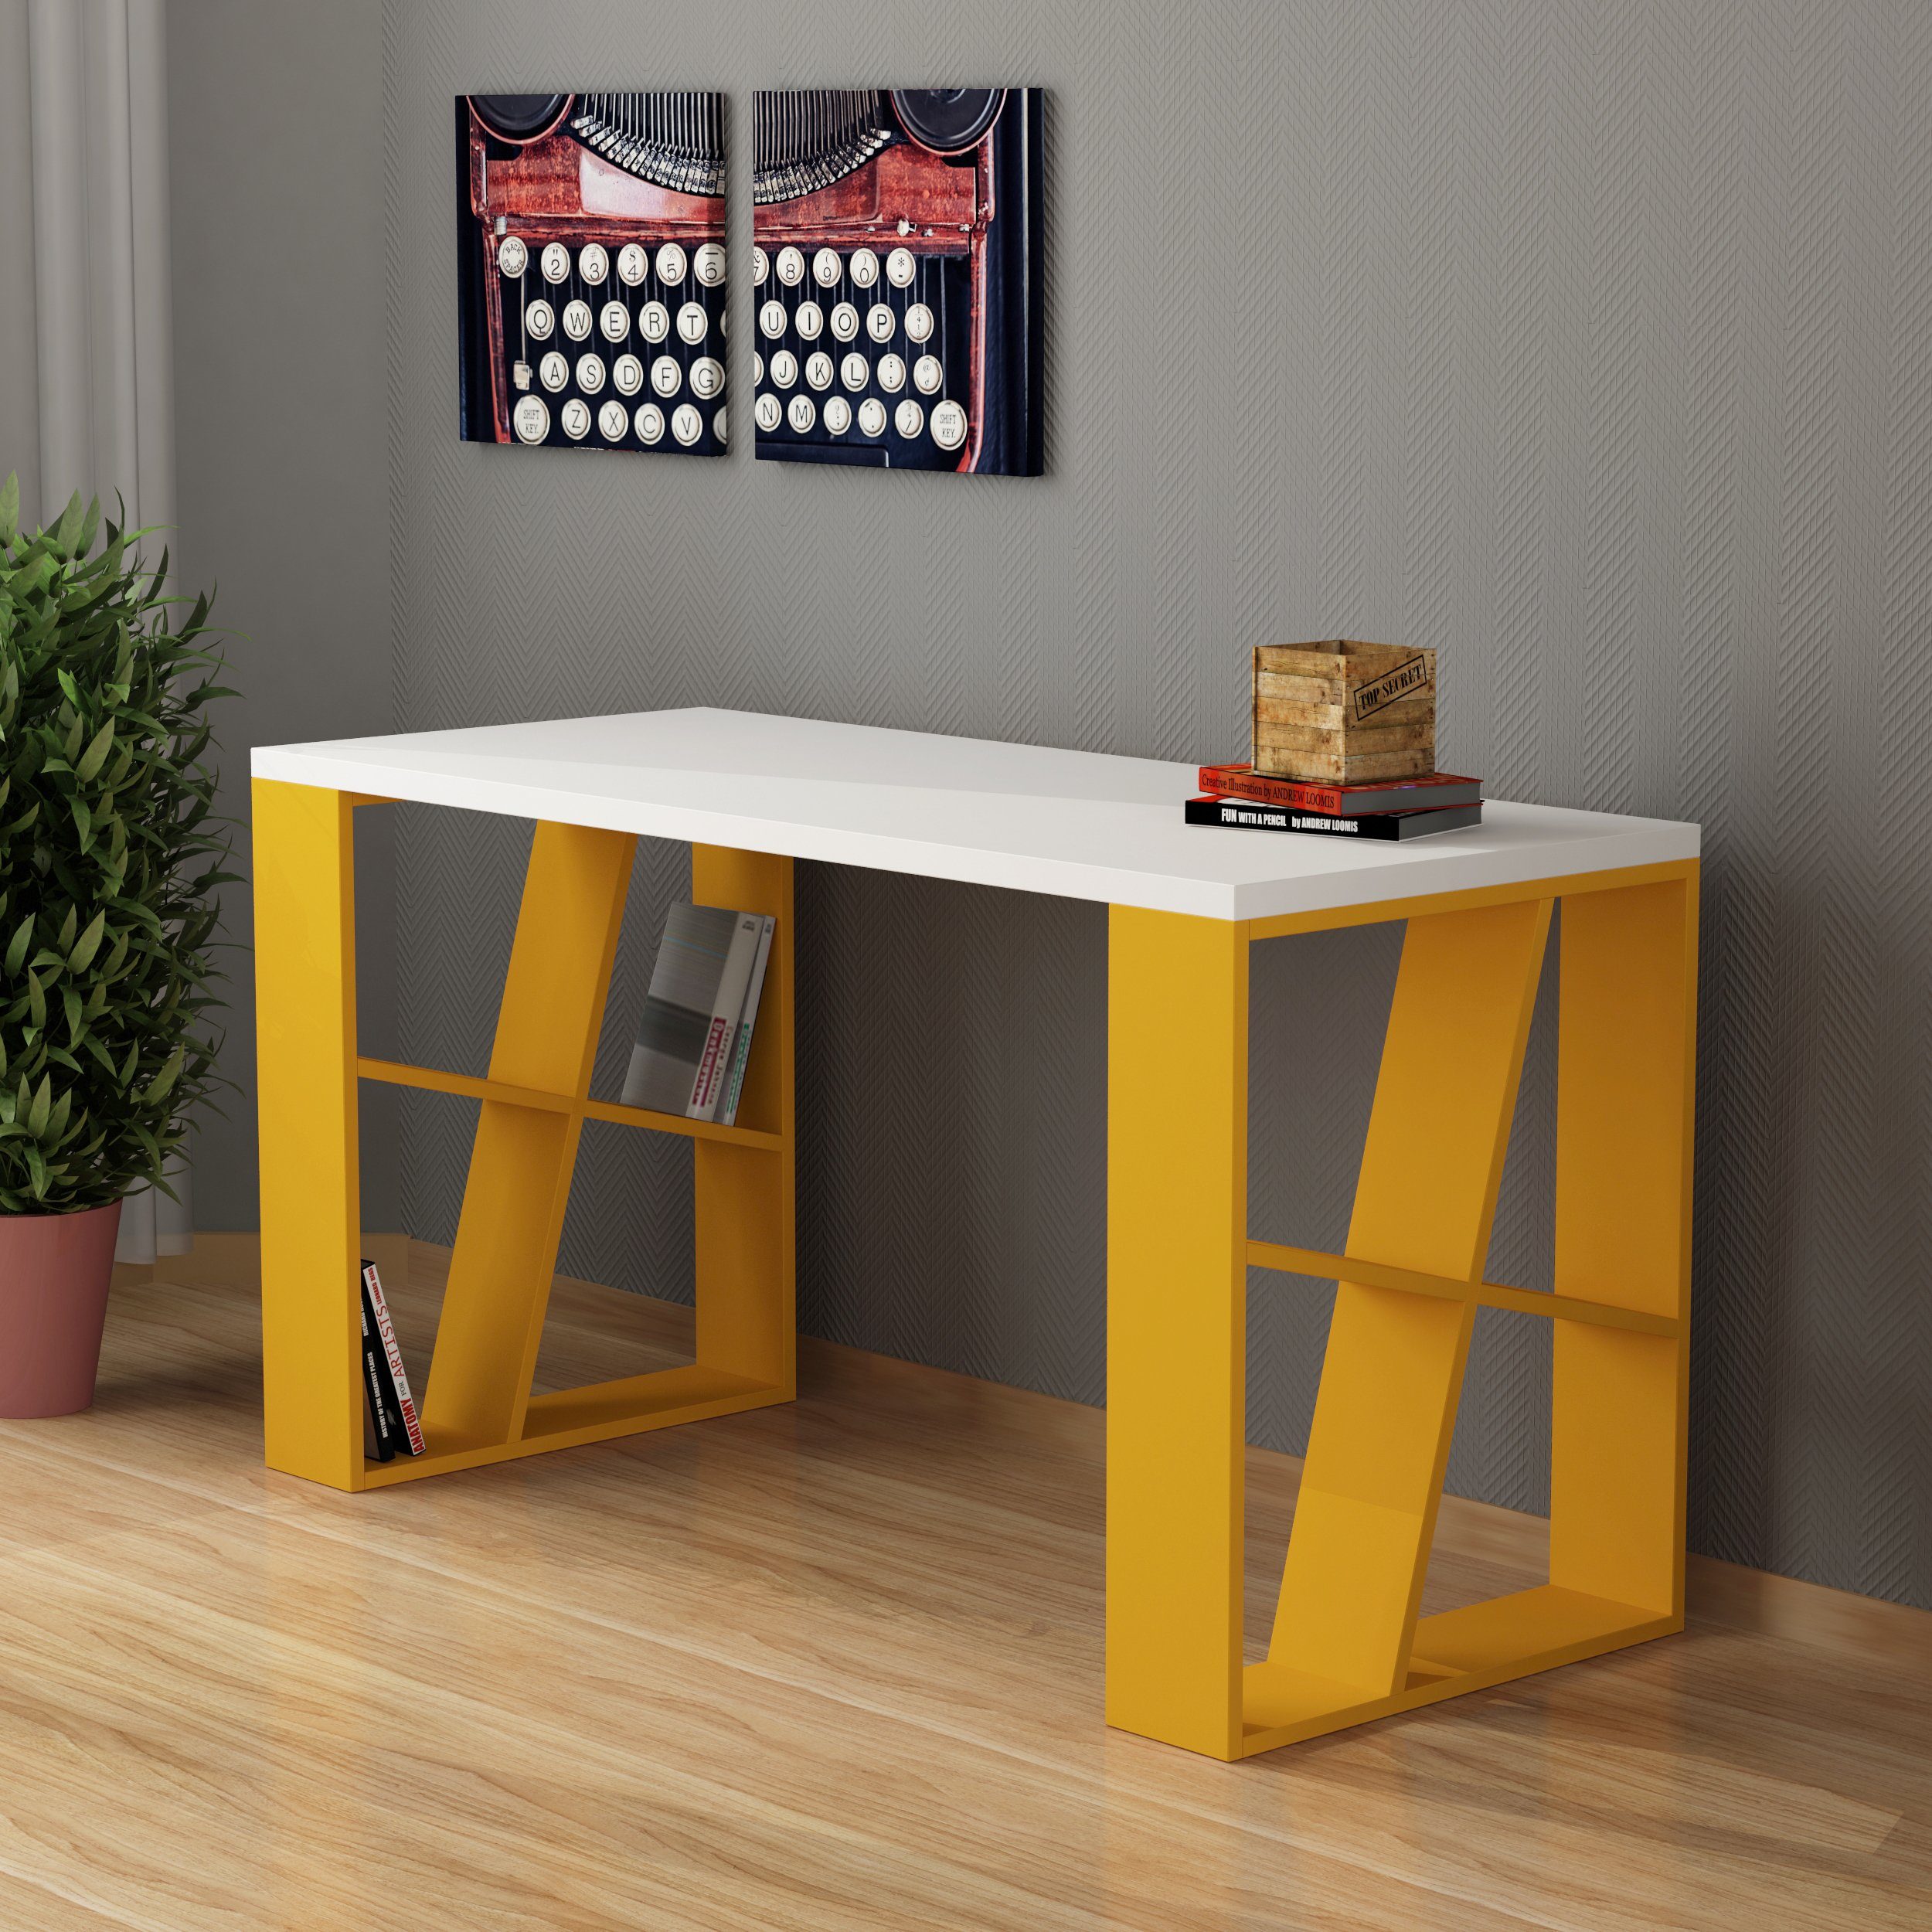 Decortie Schreibtisch Honey (1 Tisch), Moderner Schreibtischt mit Bücherregal, 137 x 60 x 75 cm weiß-senf